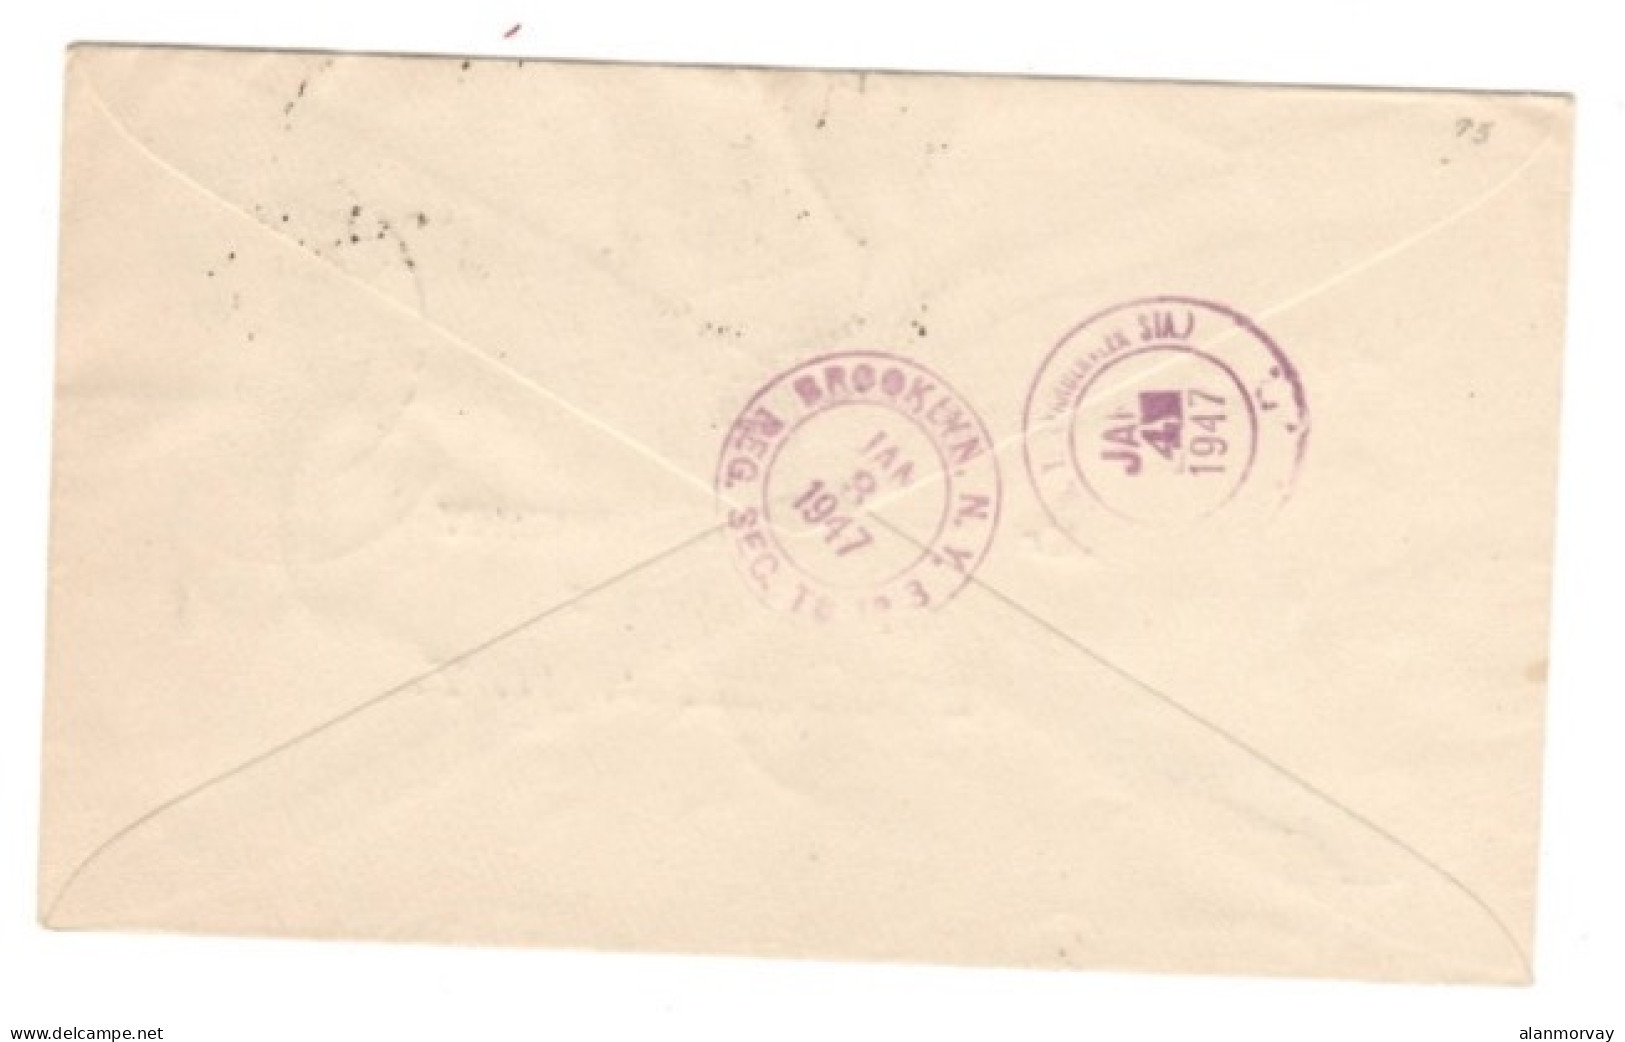 Aden - Aden Kathiri State Of Seiyun 1947 Registered Cover To USA - Aden (1854-1963)